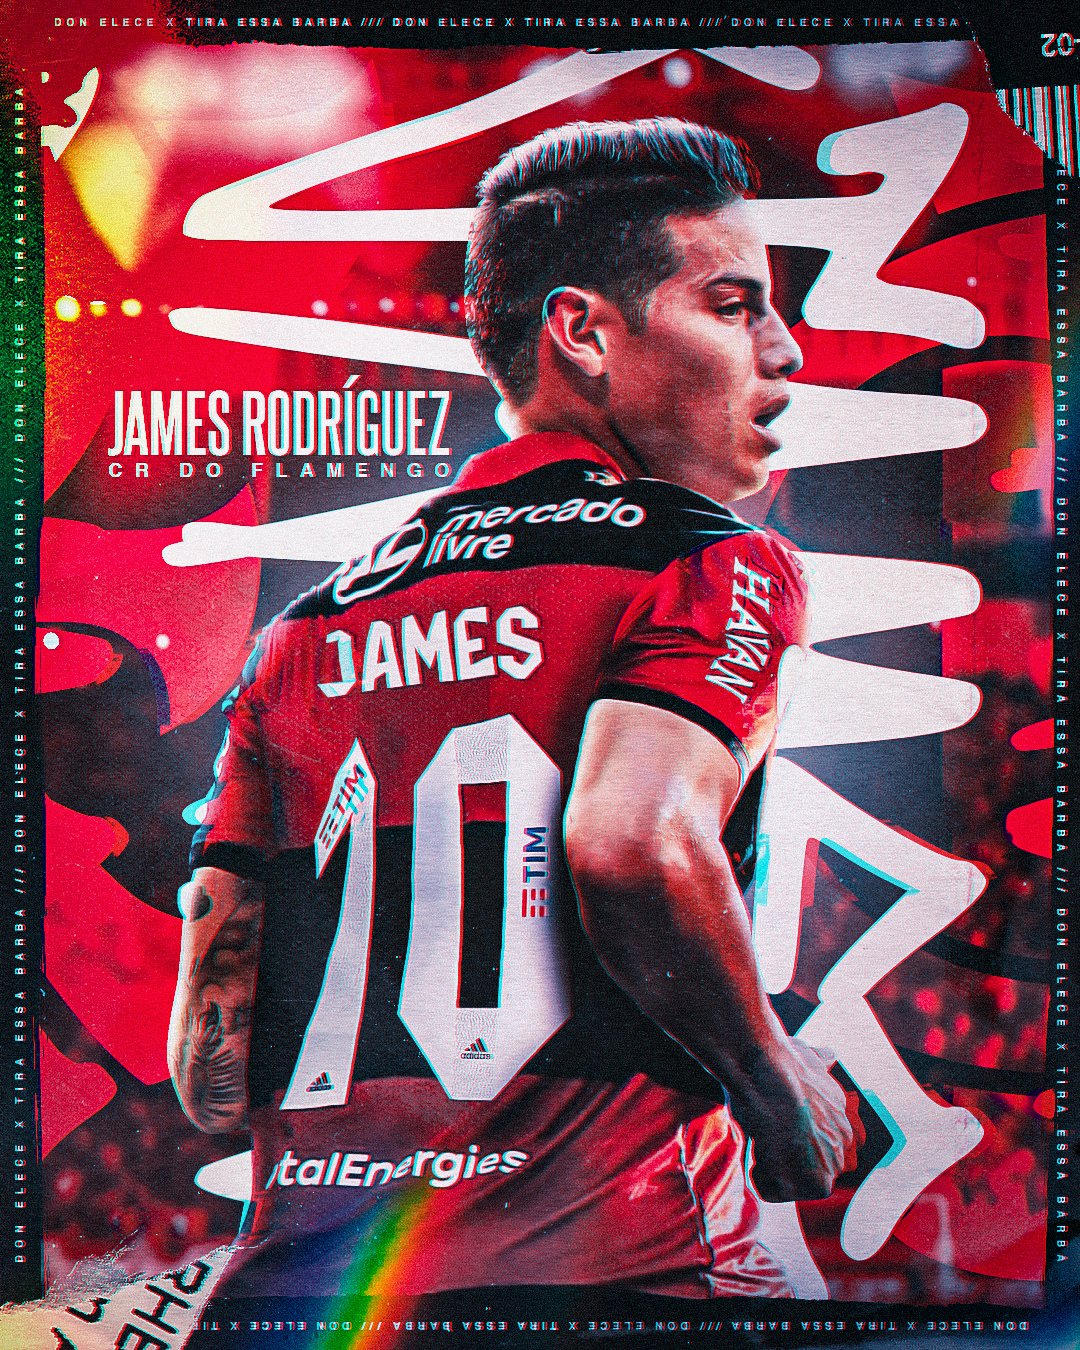 Arte de James Rodrígues no Flamengo